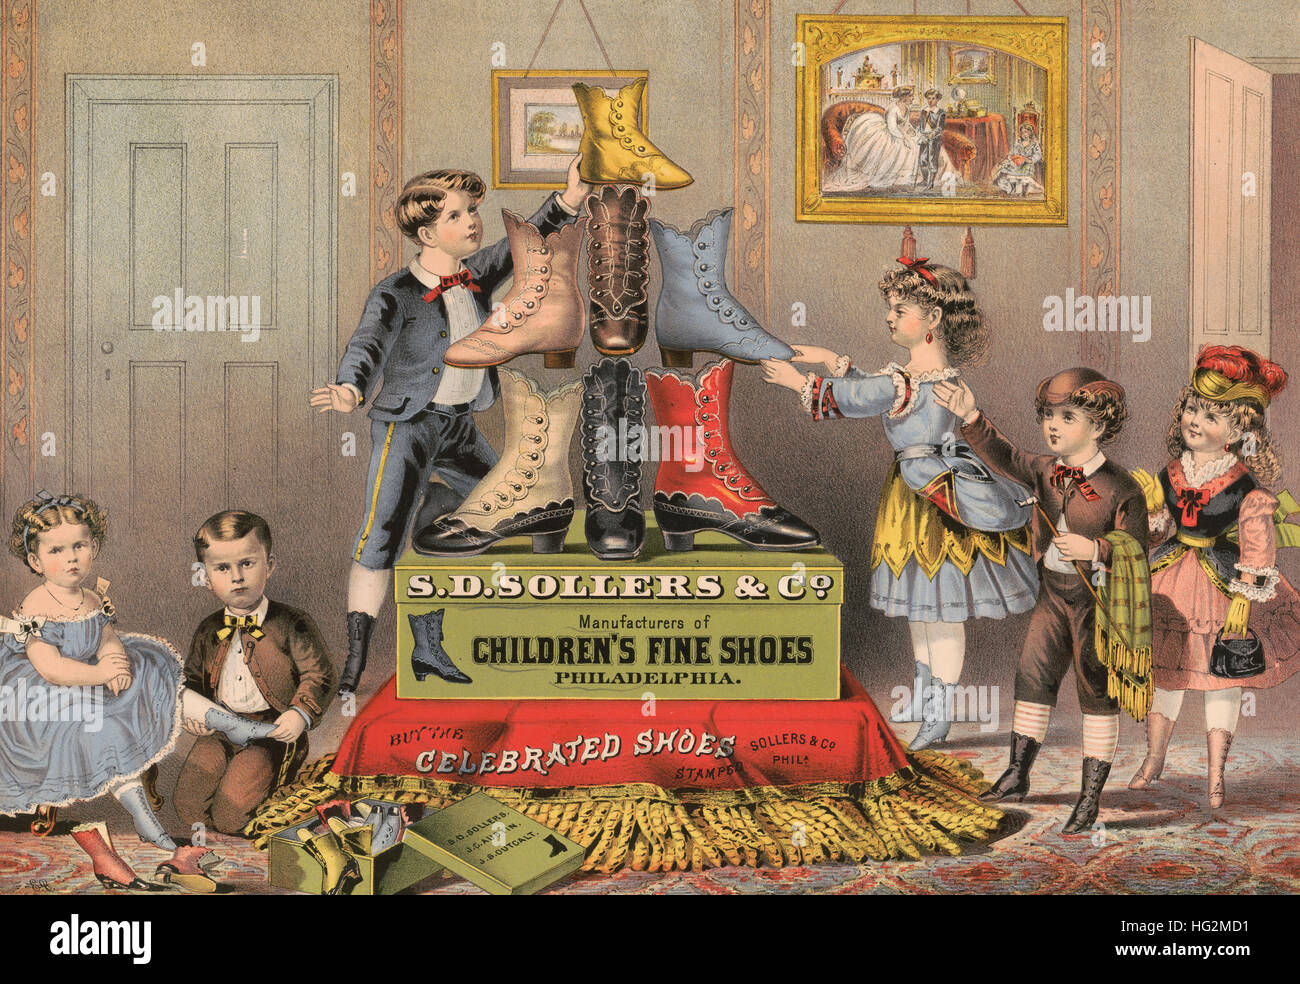 S.d. Sollers & Co. Hersteller von feinen Kinderschuhe, Philadelphia.  Werbung für Schuhe, die modisch gekleidete Kinder neben Schuh Display zeigt.  1874 Stockfoto